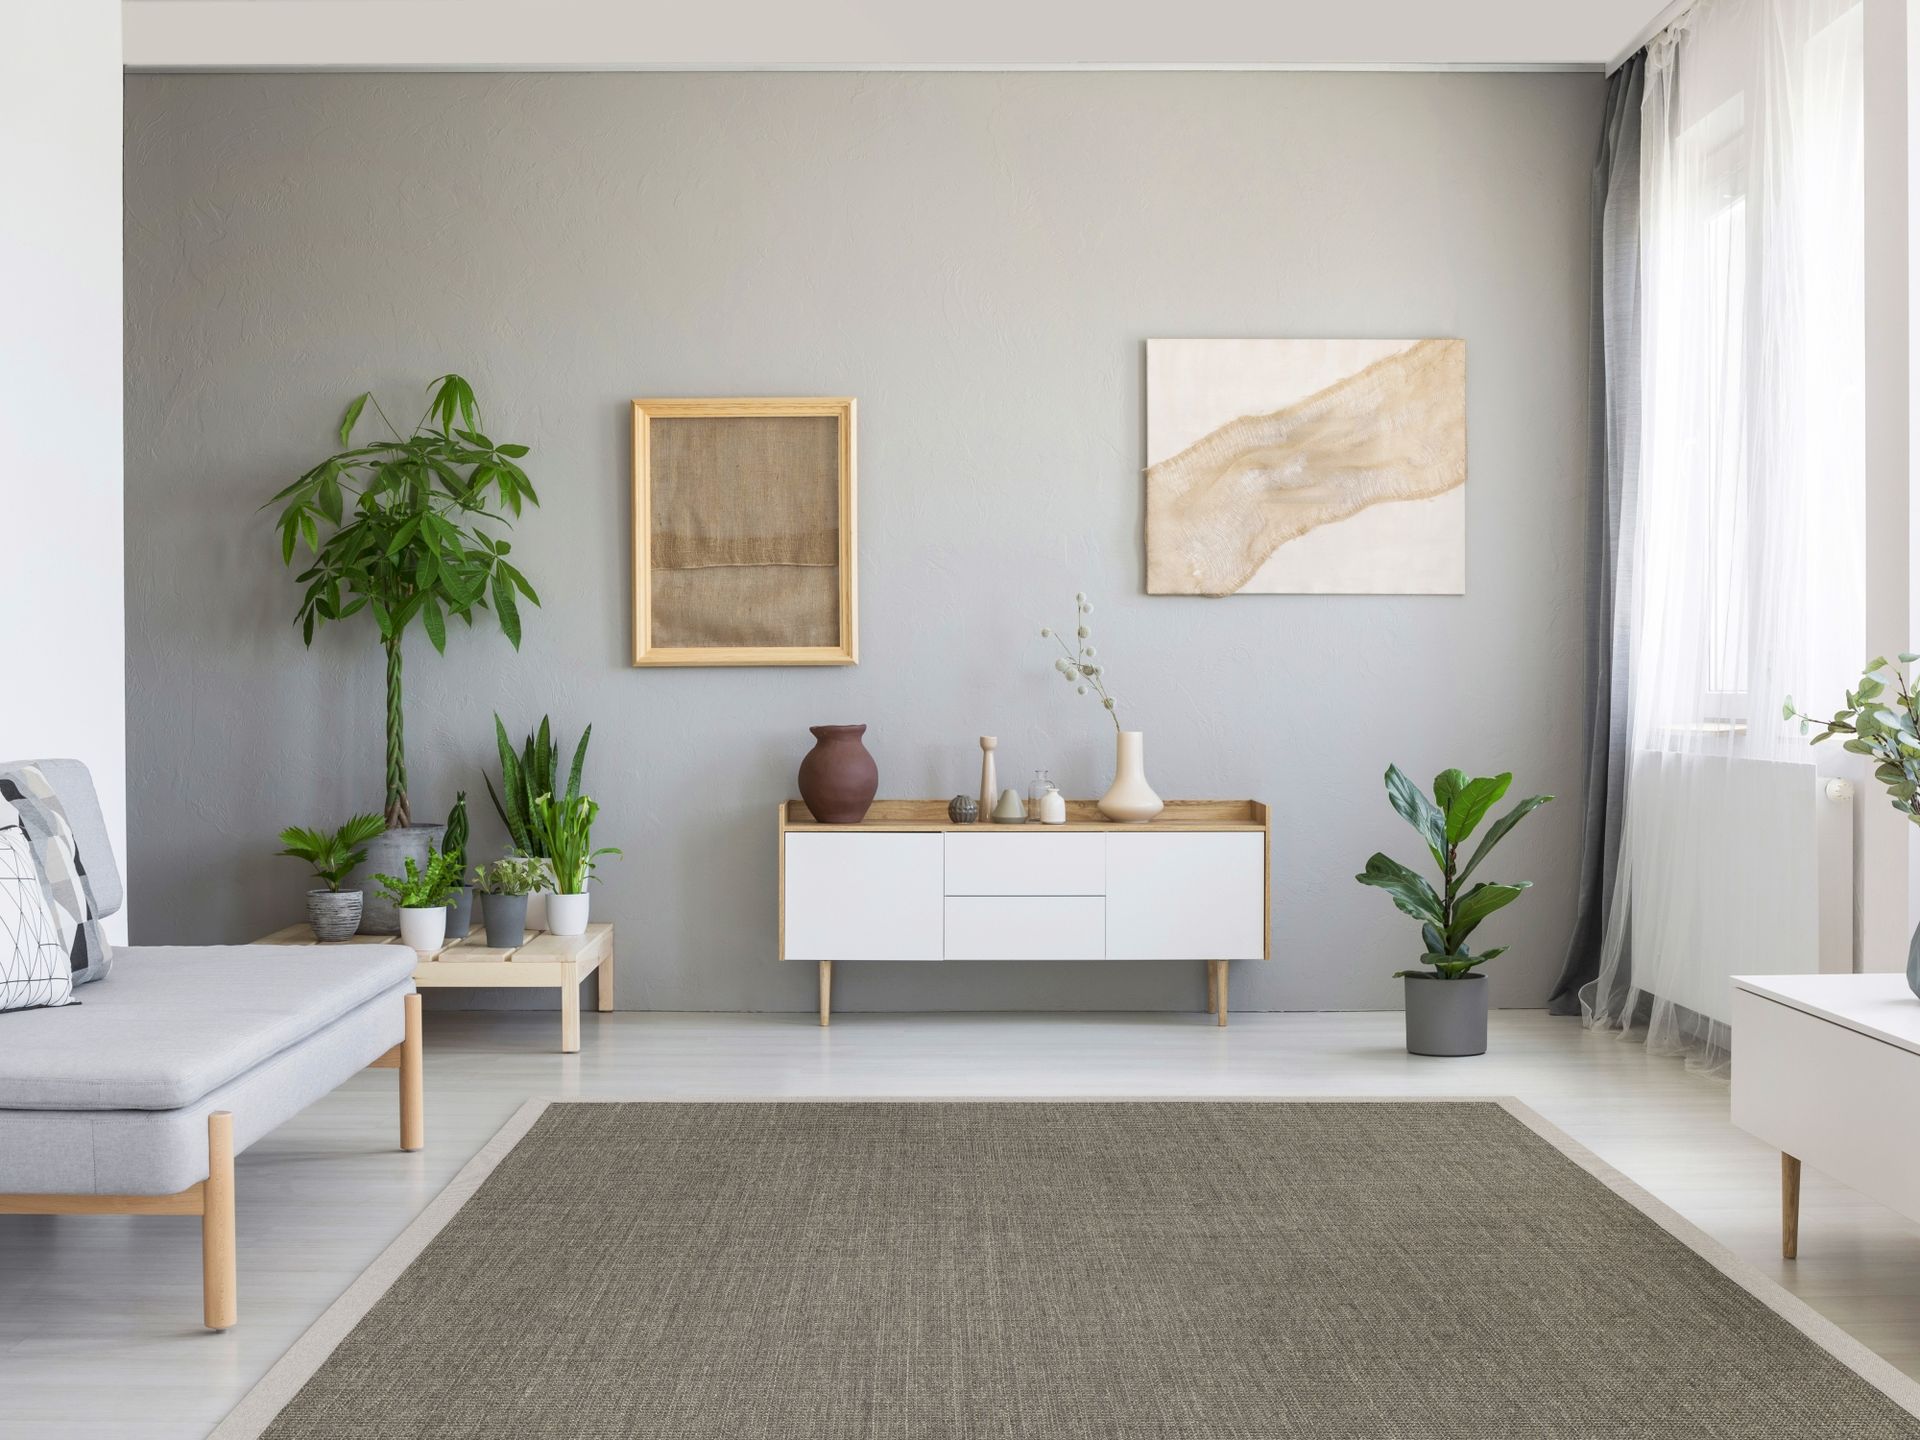 Milieufoto eines grauen Sisalteppichs in einem modernen Wohnzimmer.